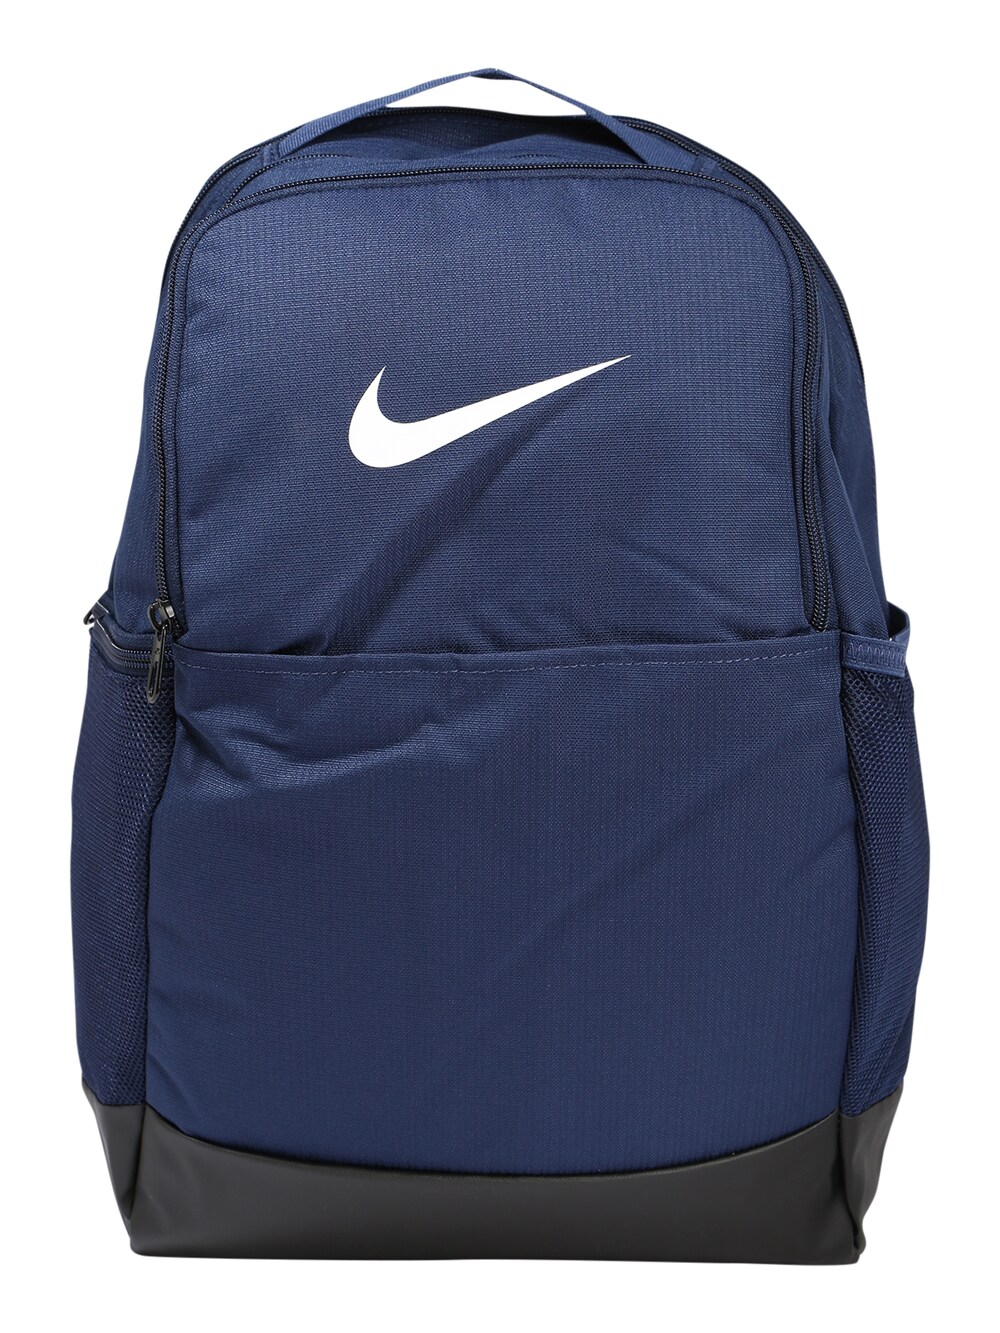 Спортивный рюкзак Nike Brasilia 9.5, темно-синий